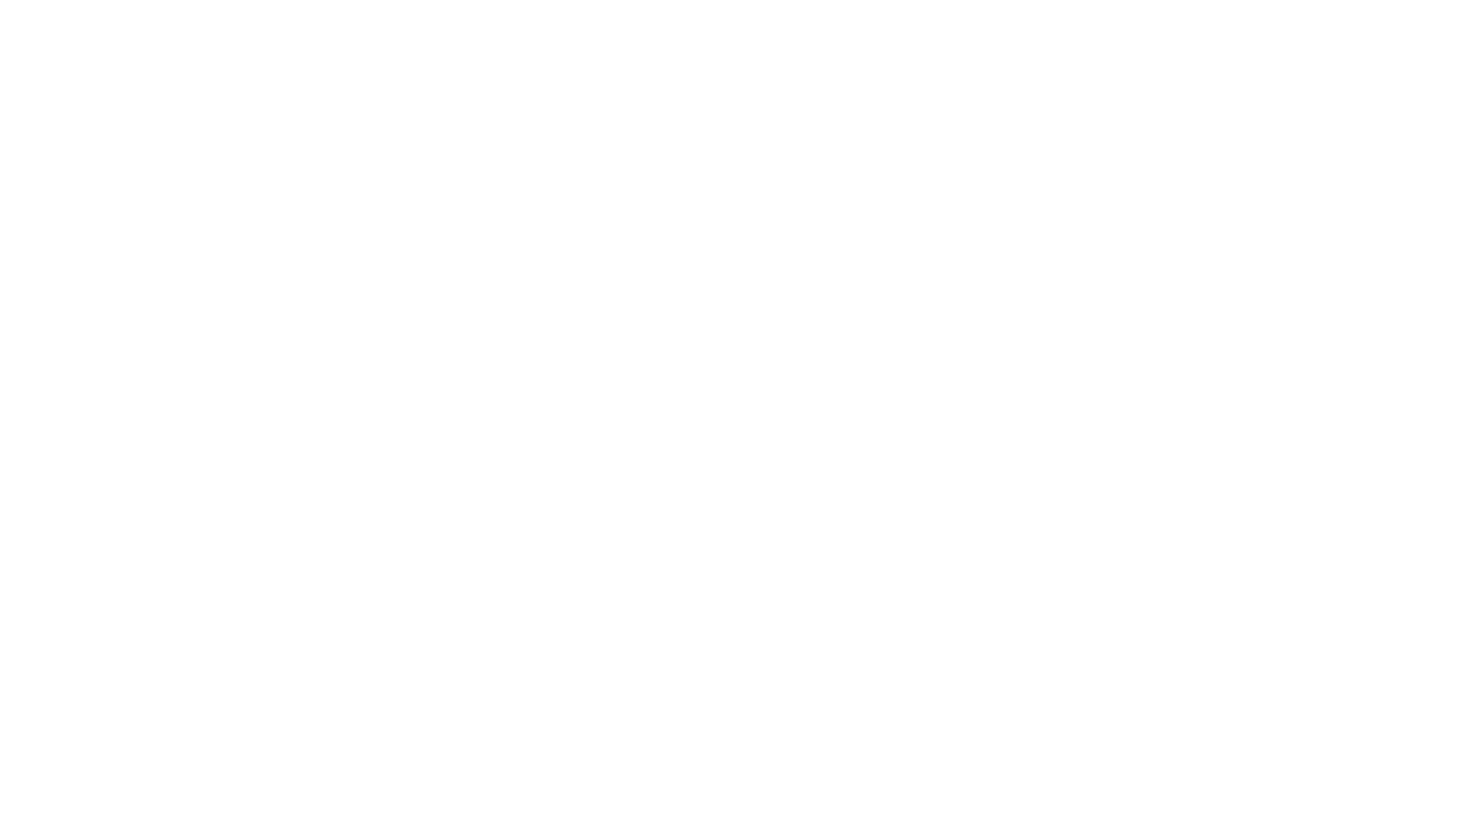 backslash